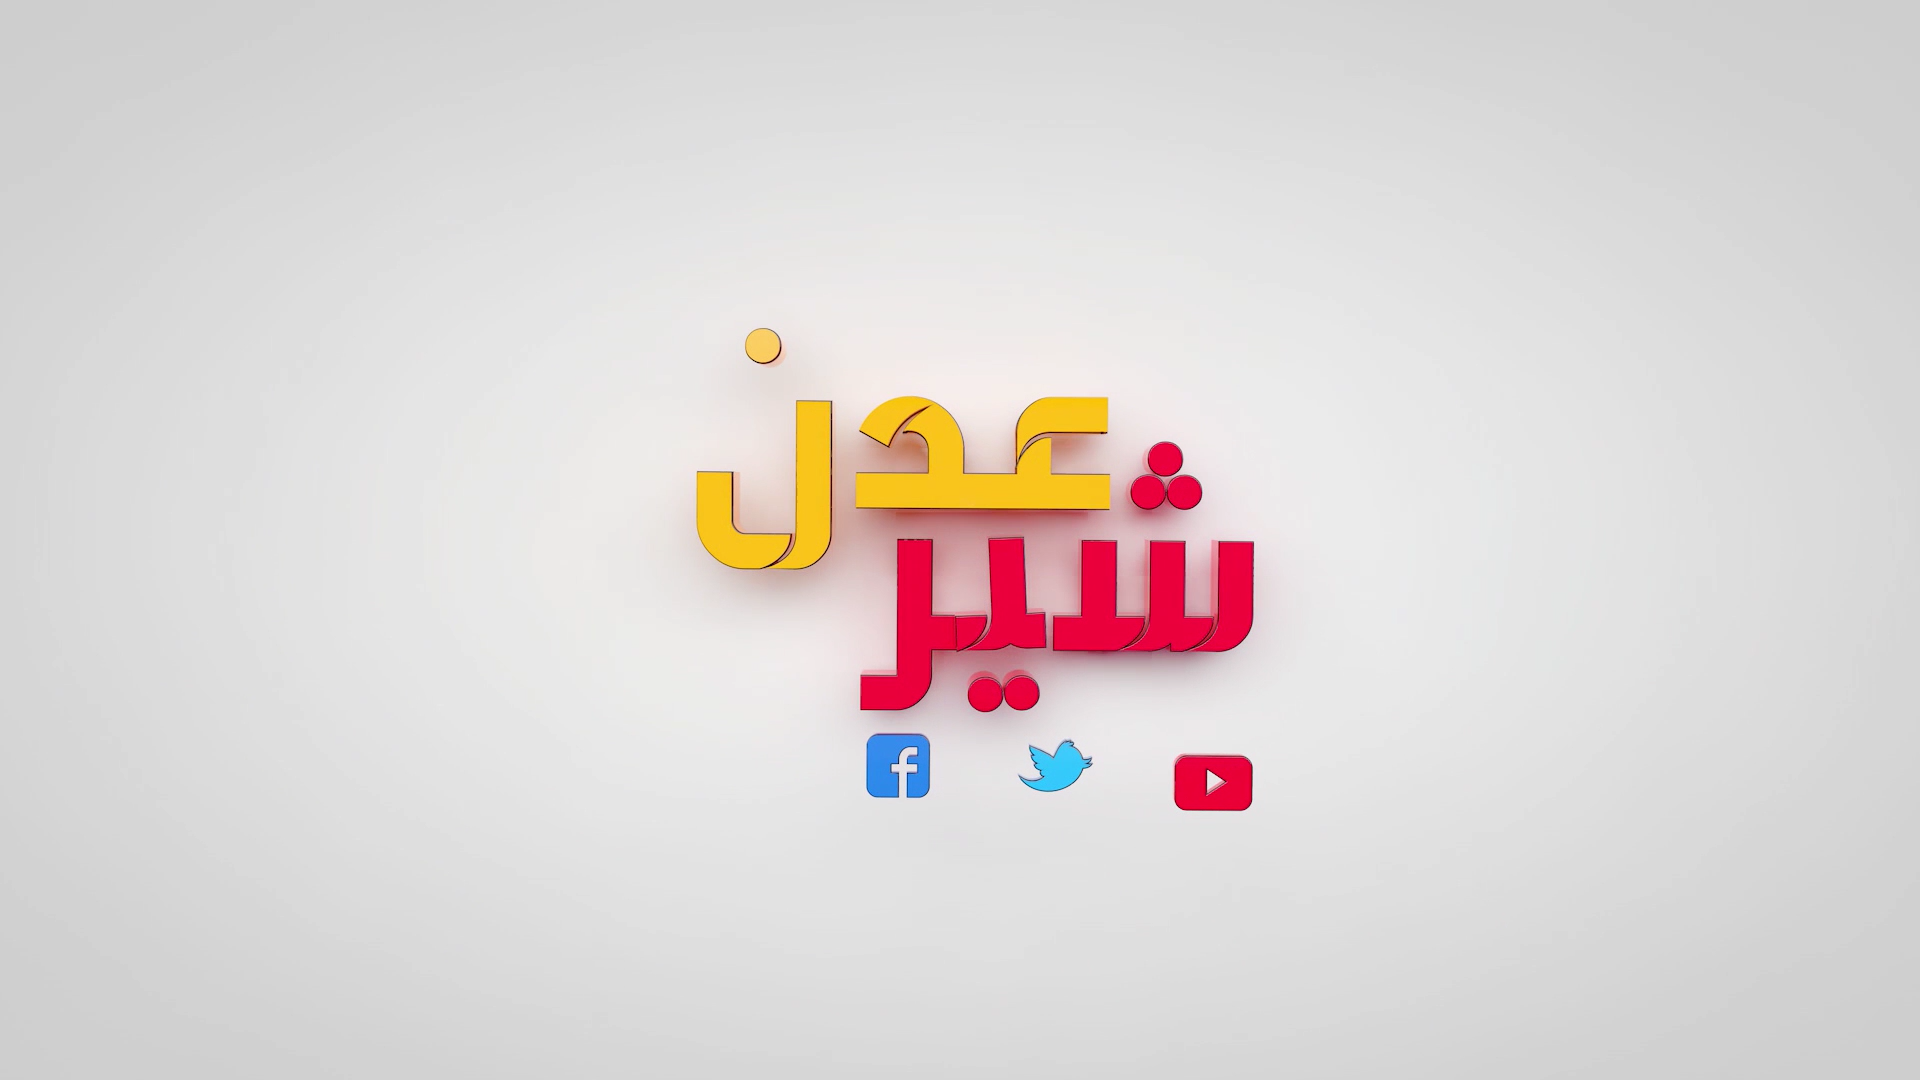 يرنامج عدن شير انتاج قناة عدن الفضائية من اليمن 